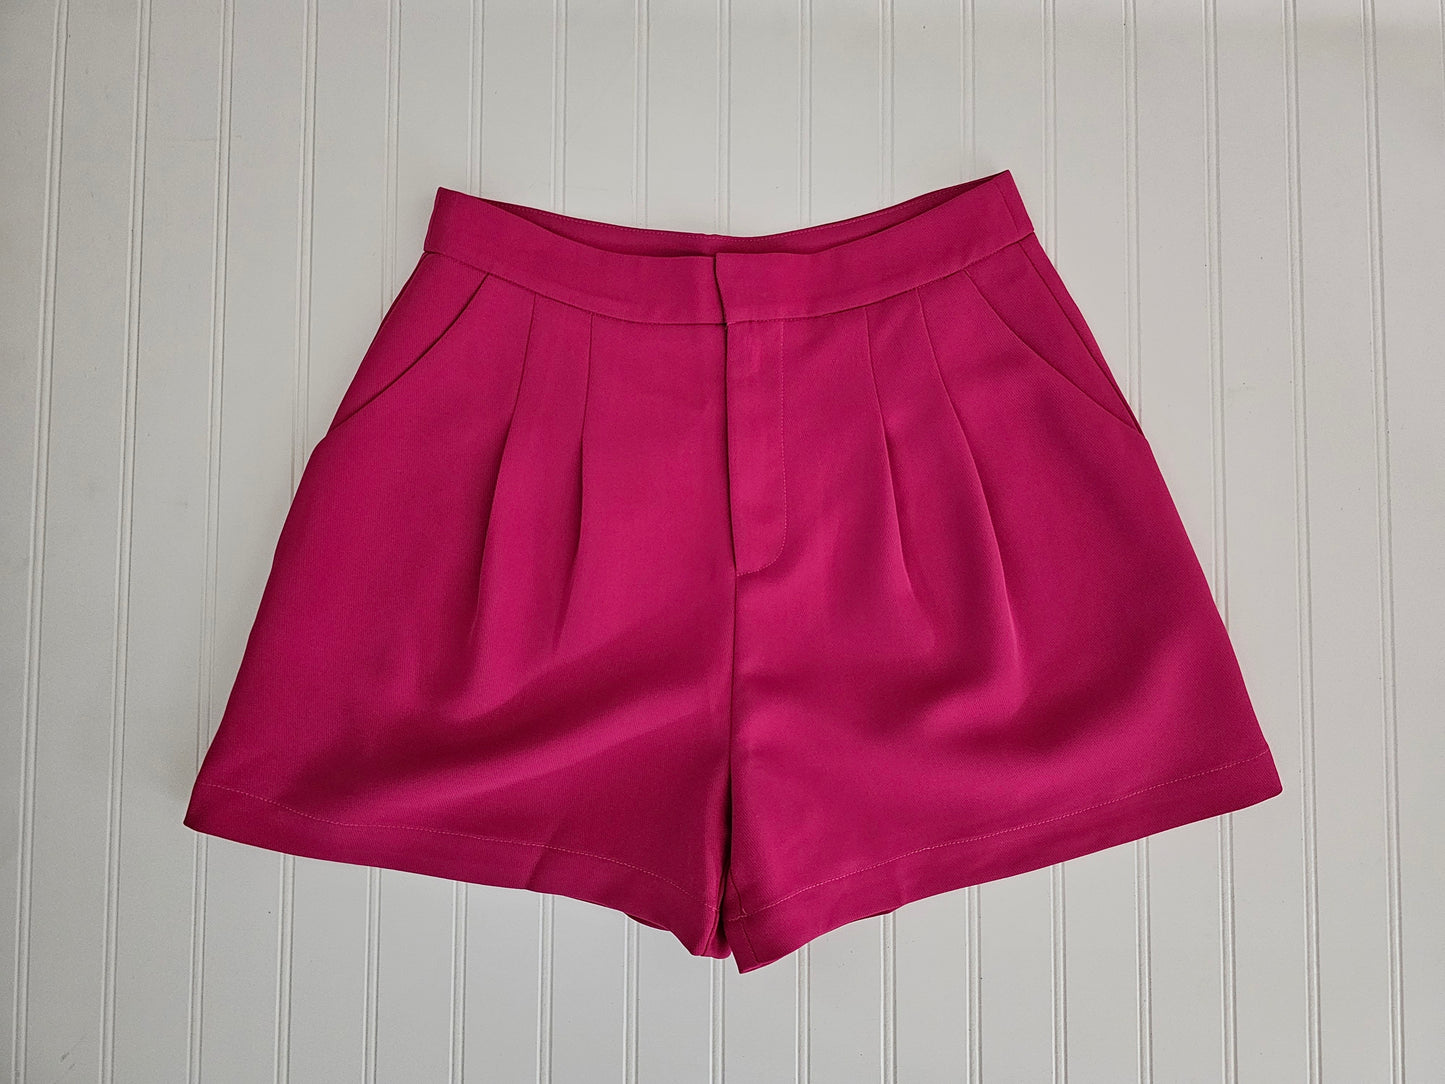 Hot Pink Dress Shorts